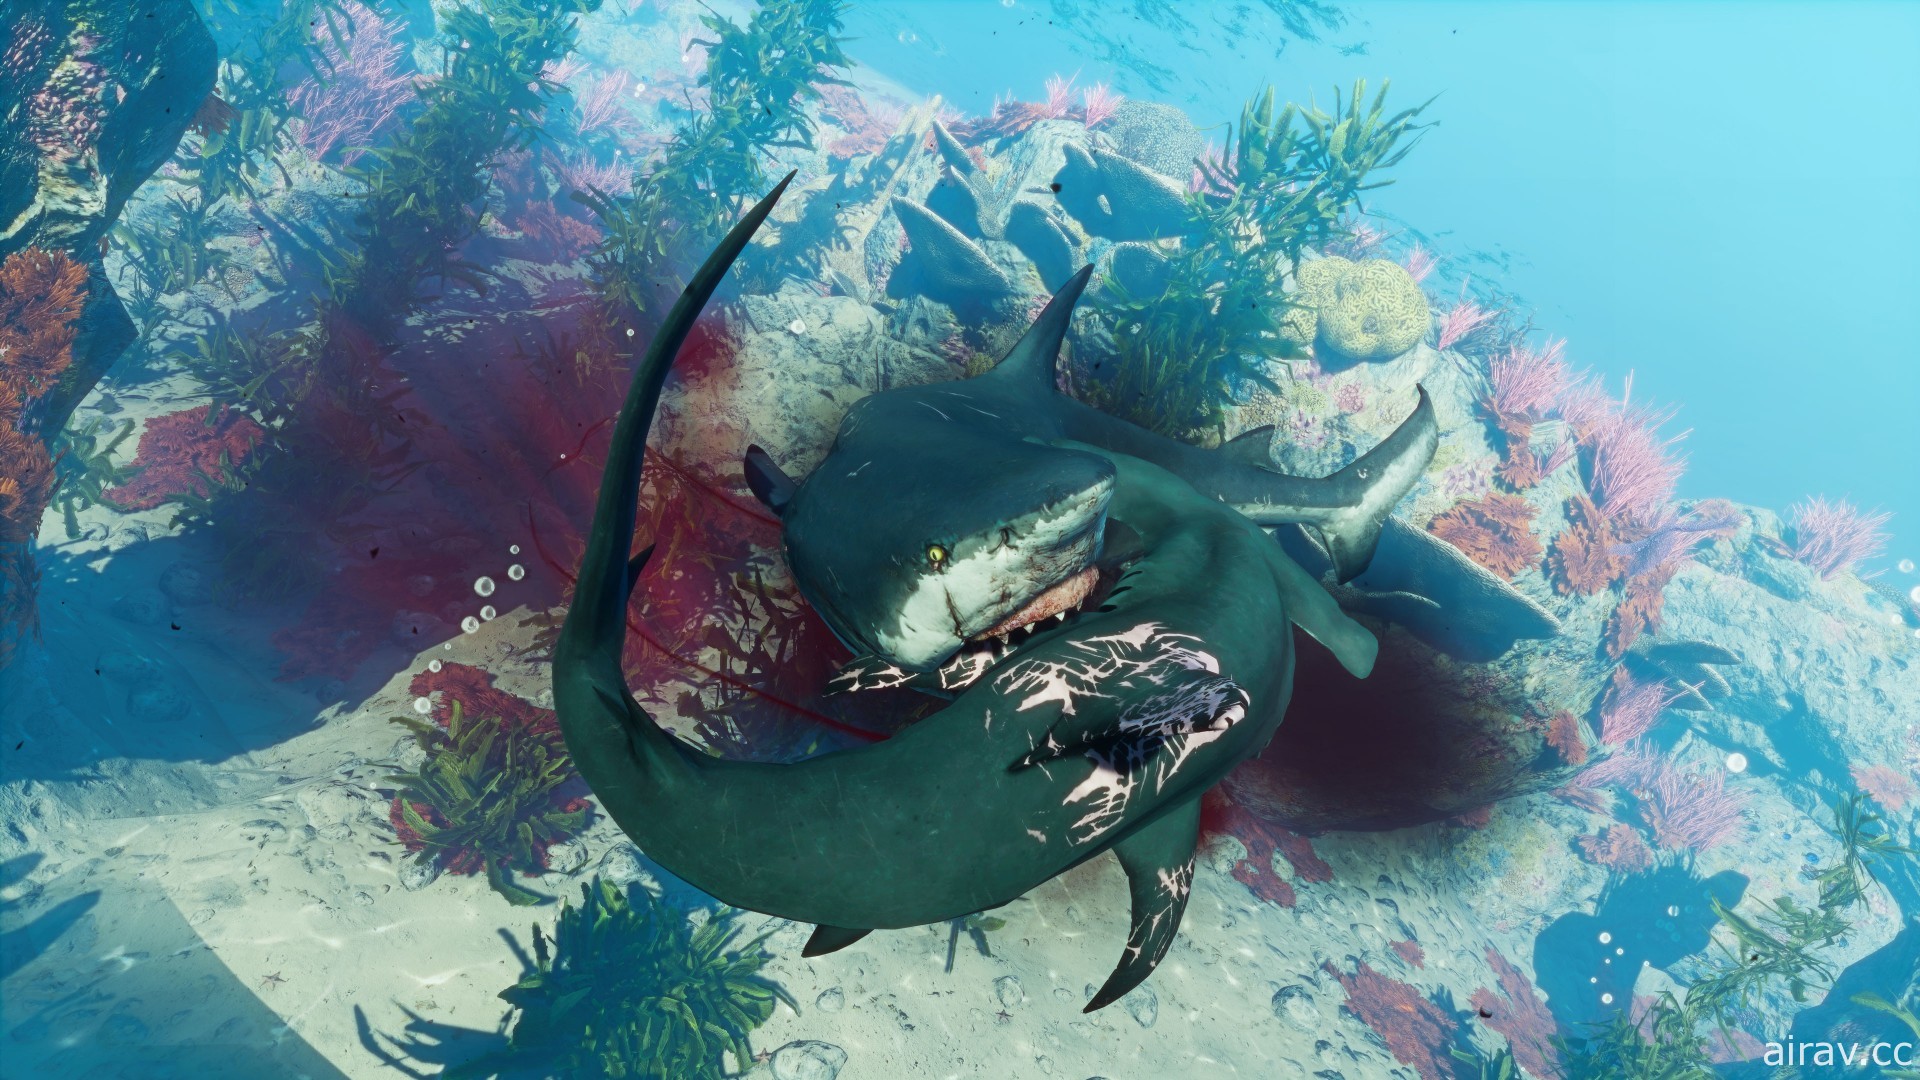 《食人鲨 Maneater》Switch 版上市 在海底上演疯狂杀戮复仇